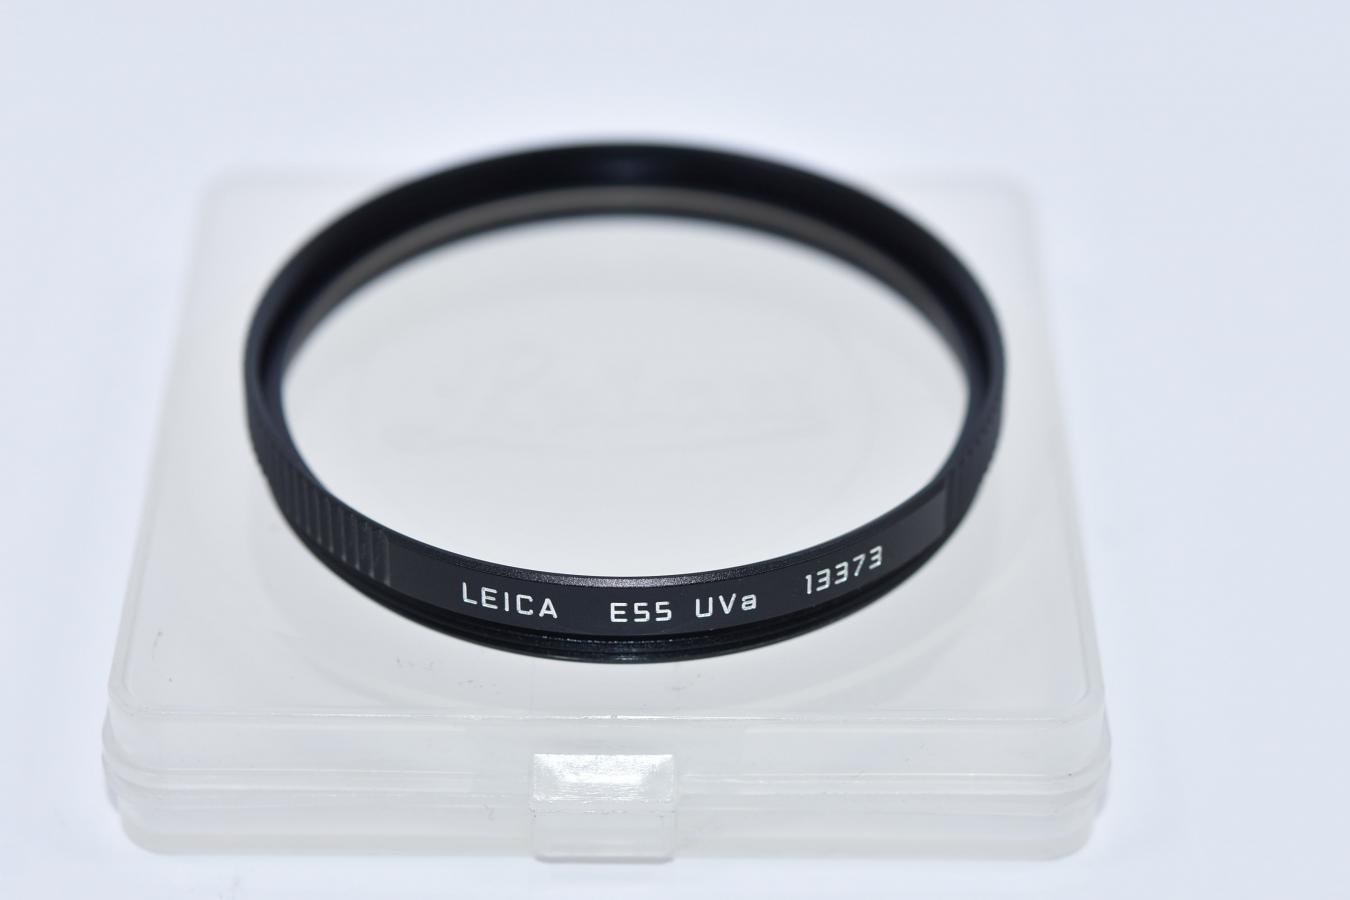 LEICA E55 UVa 13373